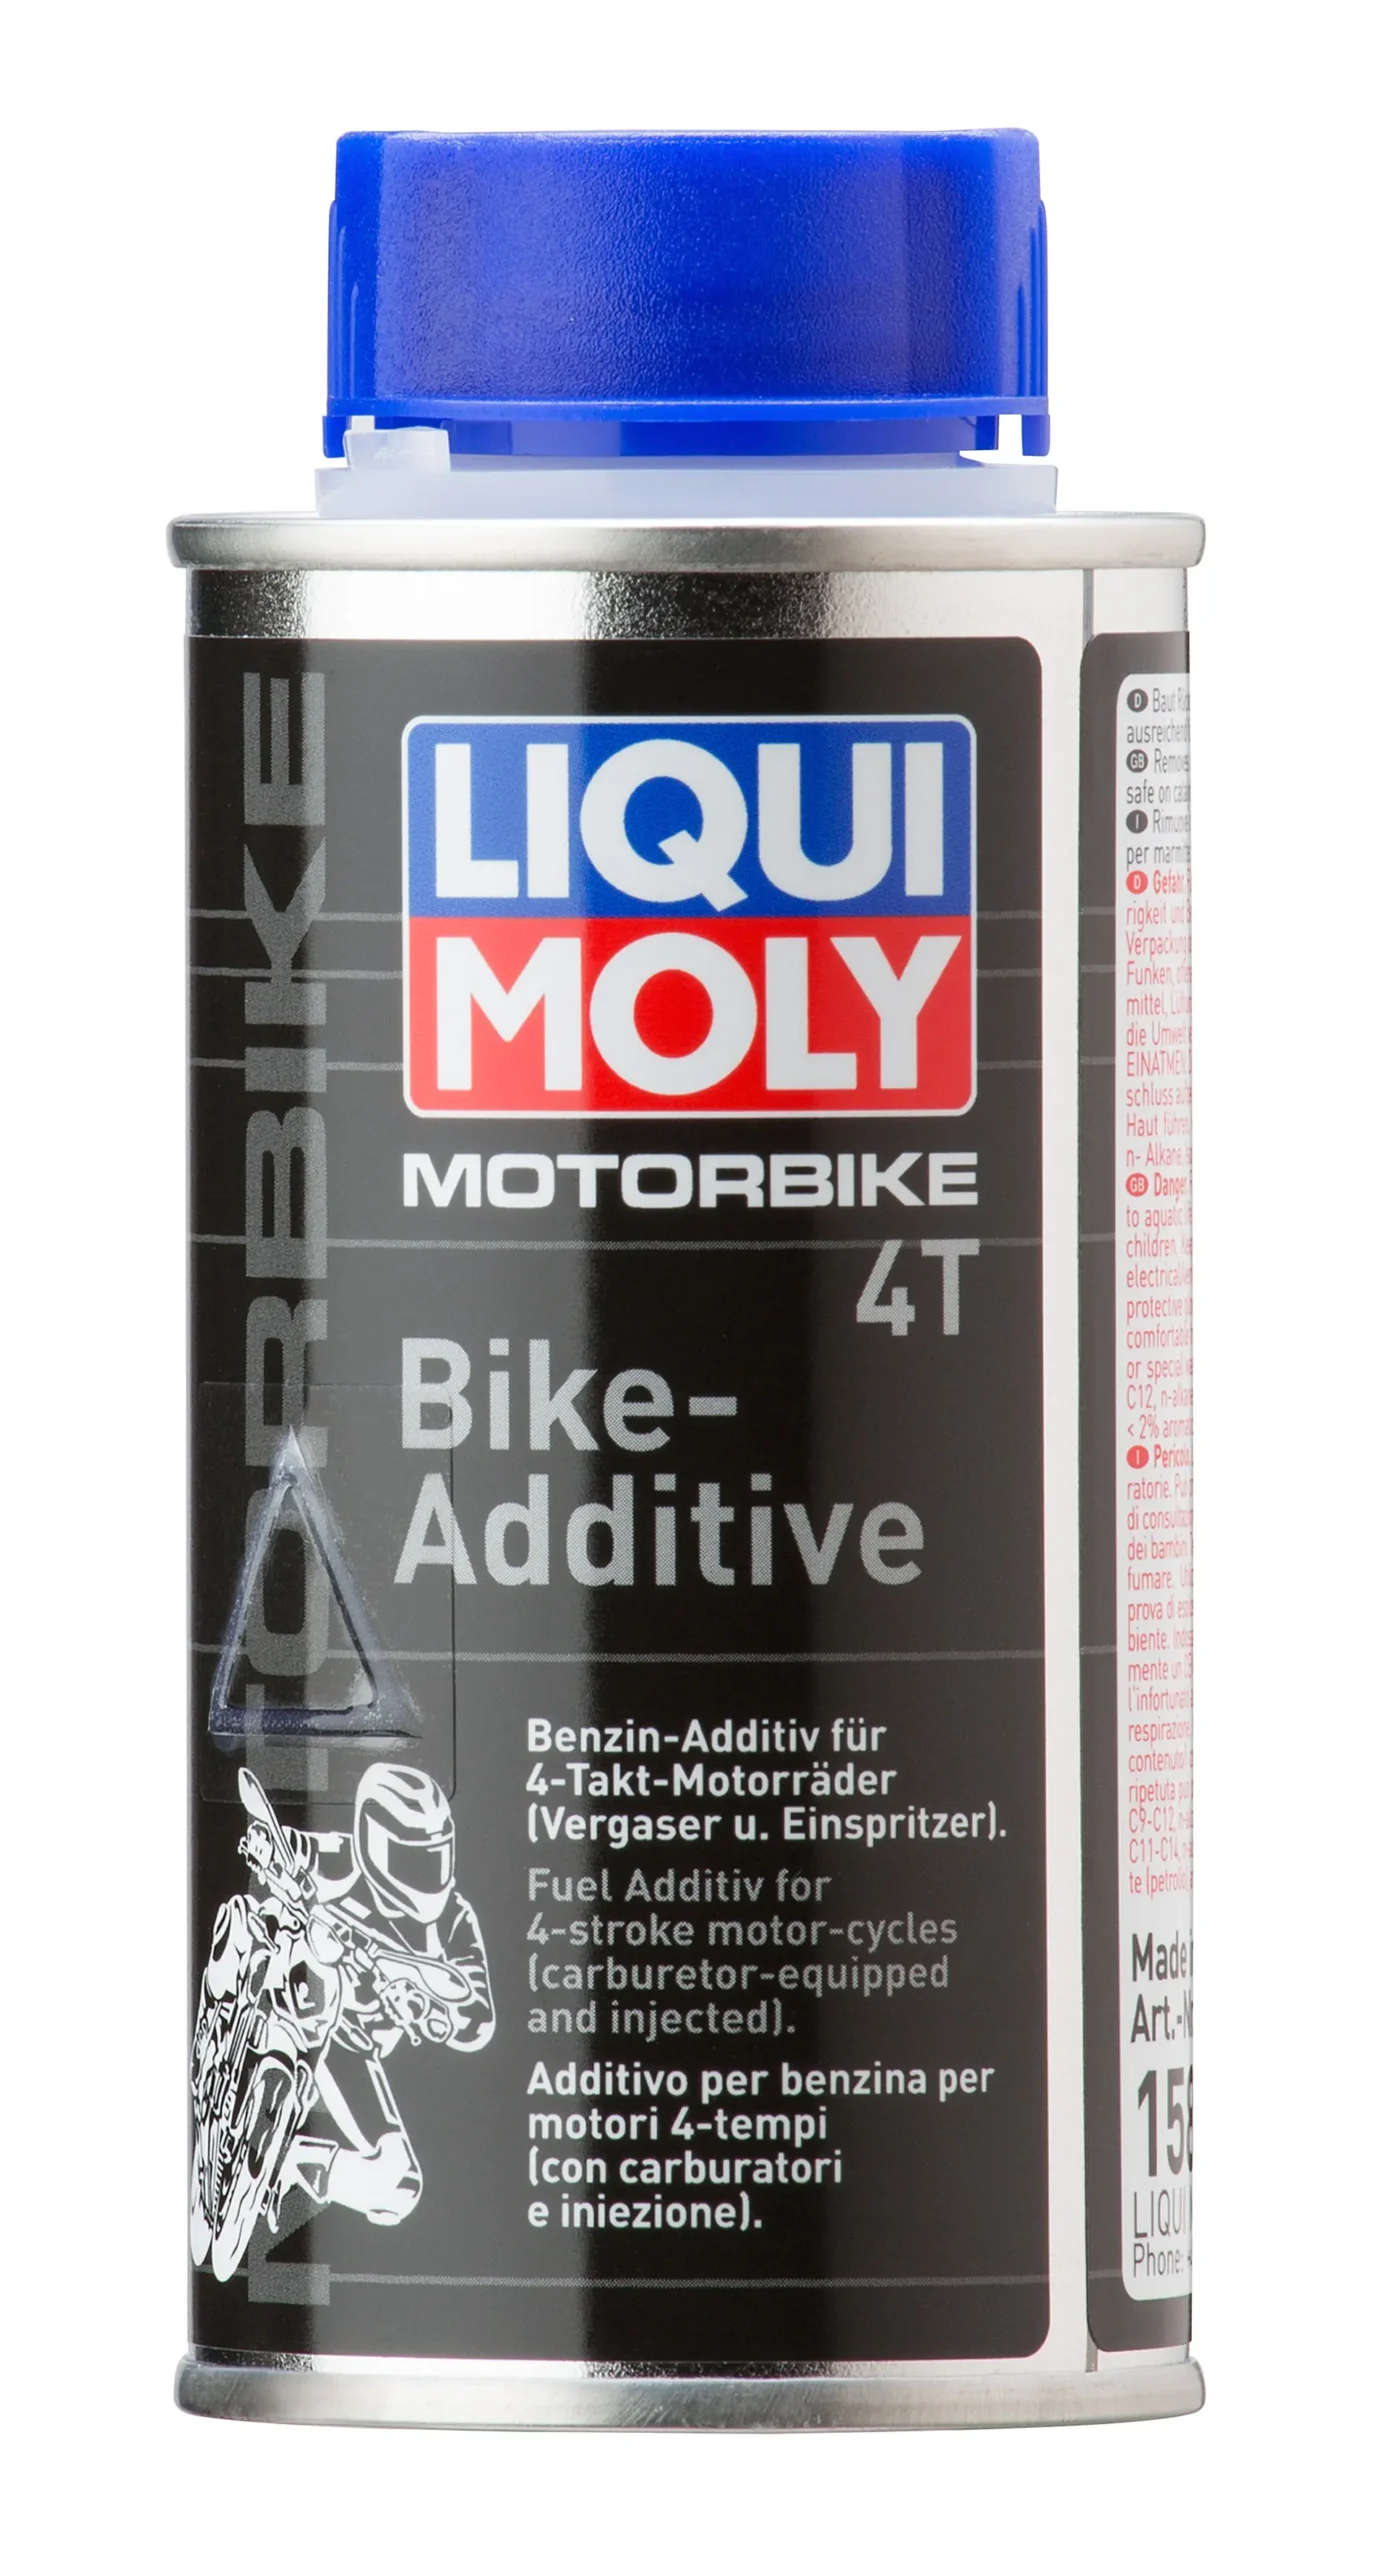 aditivo para limpiar motor de moto - Cómo se llama el líquido para limpiar el motor